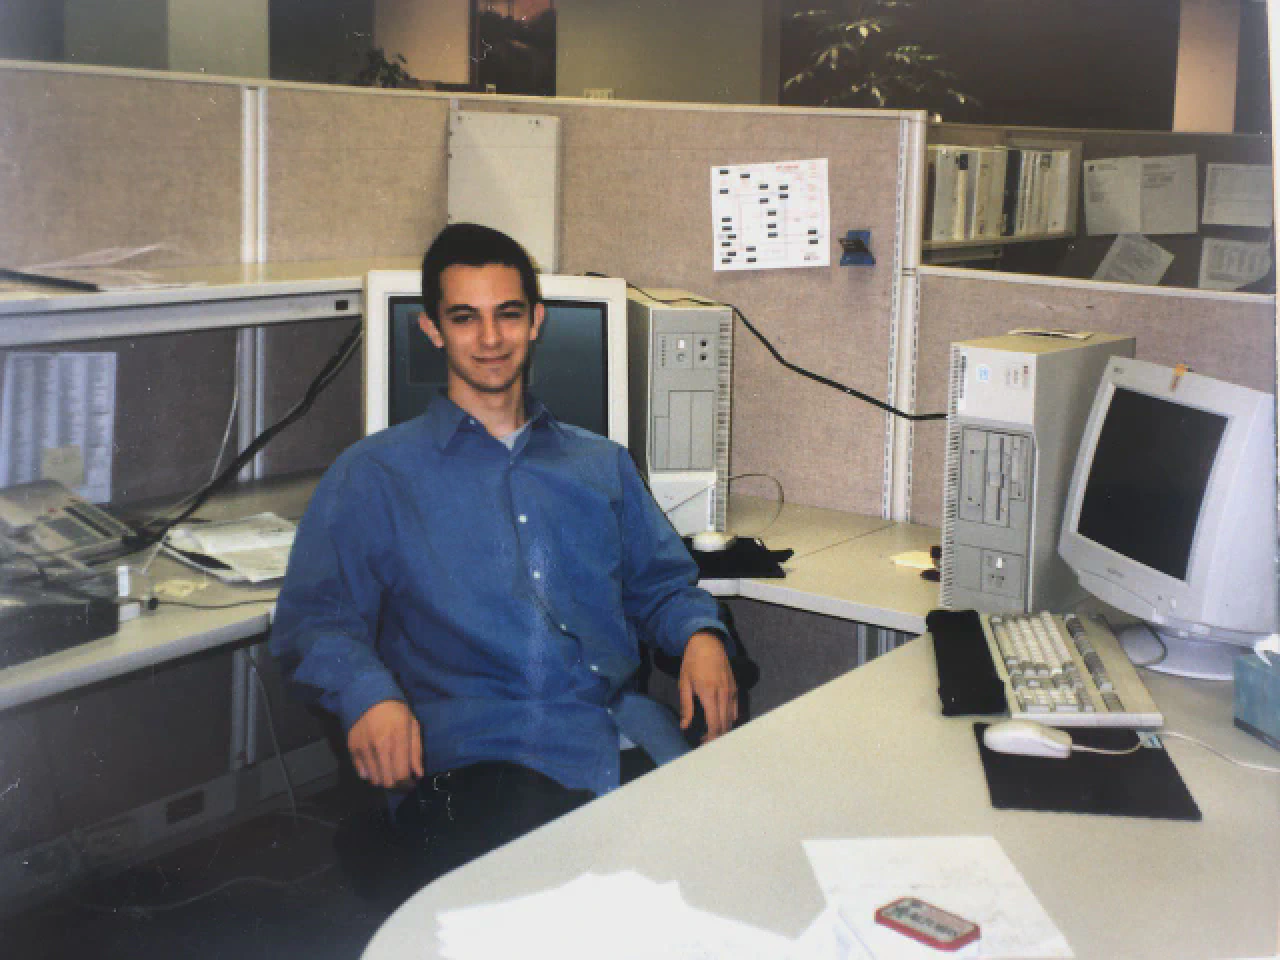 At Hewlett-Packard, June 1997